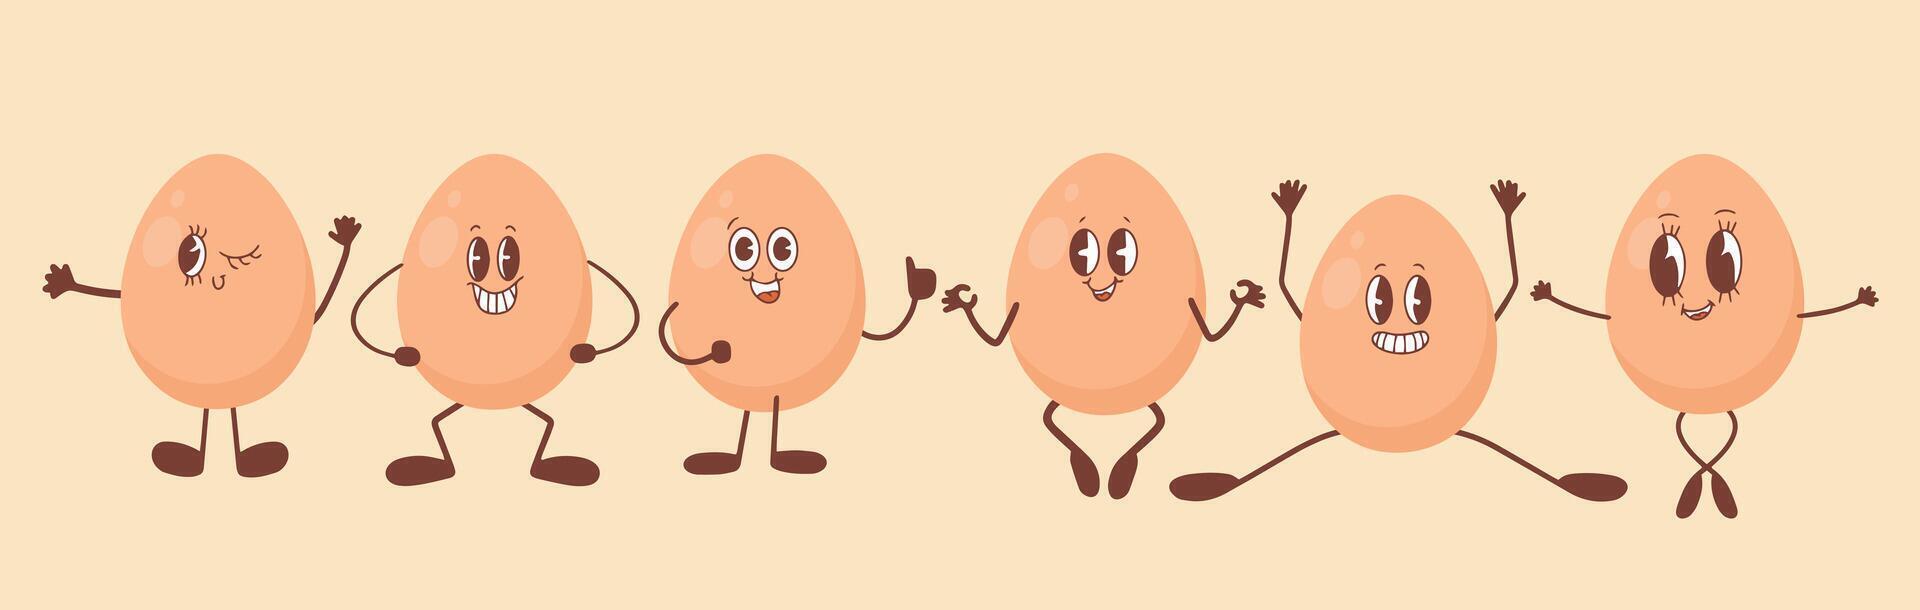 huevo en kawaii estilo. el concepto de apropiado nutrición y sano estilo de vida. vector ilustración aislado en blanco antecedentes.